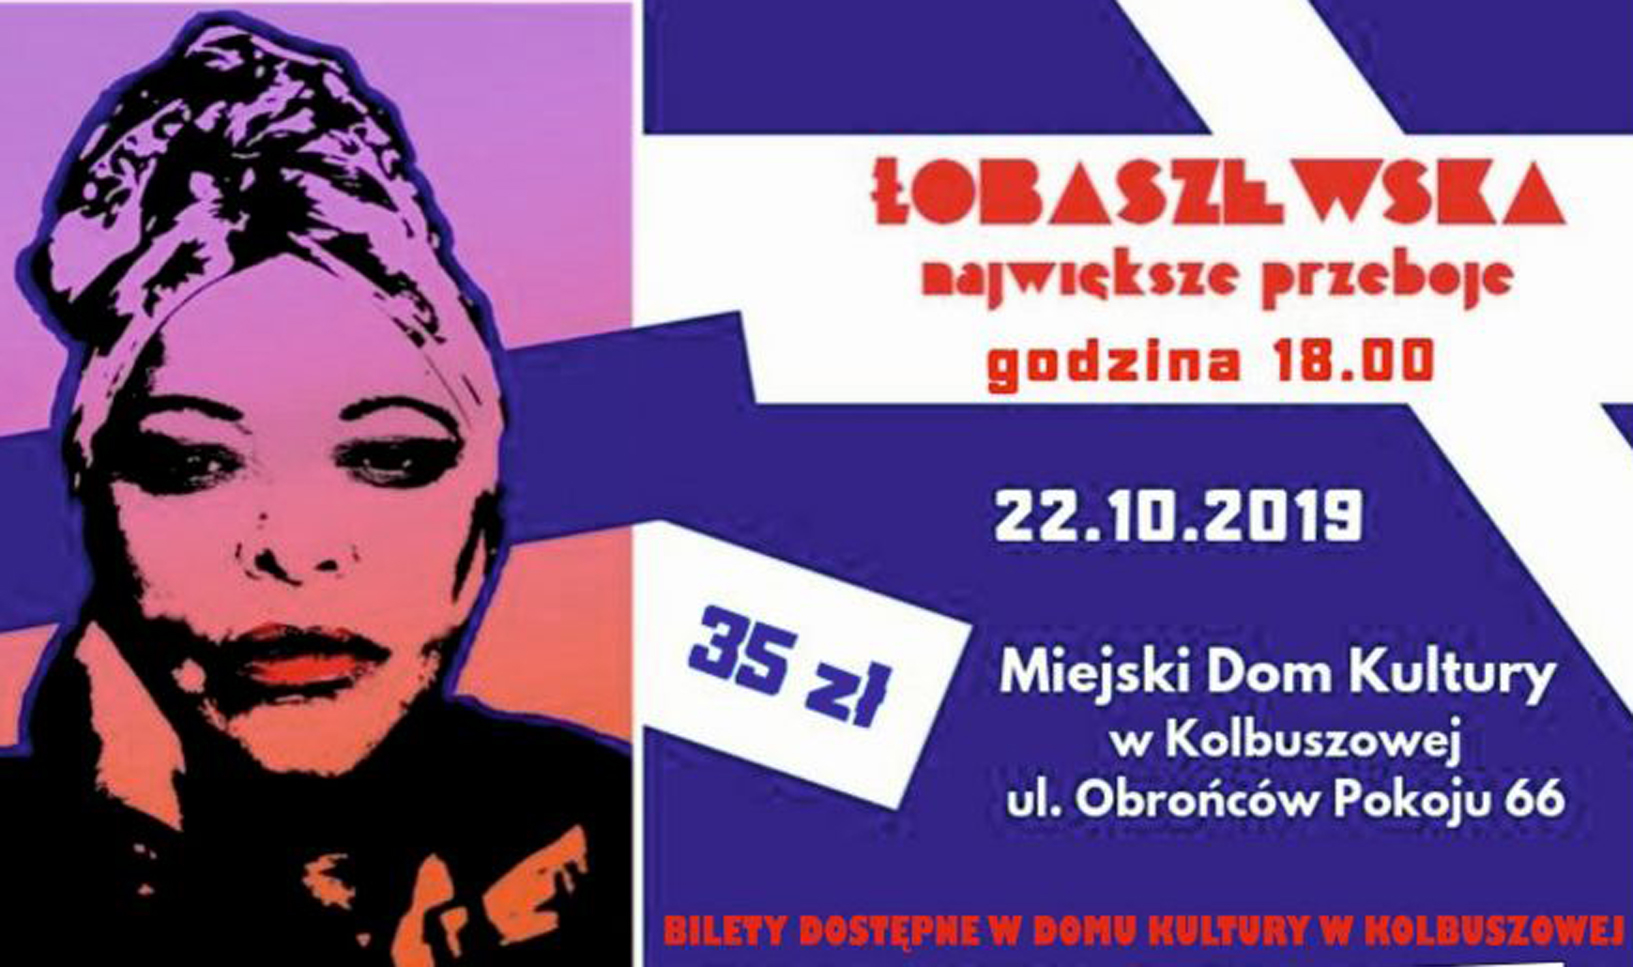 Grażyna Łobaszewska wystąpi w Kolbuszowej. Mamy bilety na jej koncert  - Zdjęcie główne